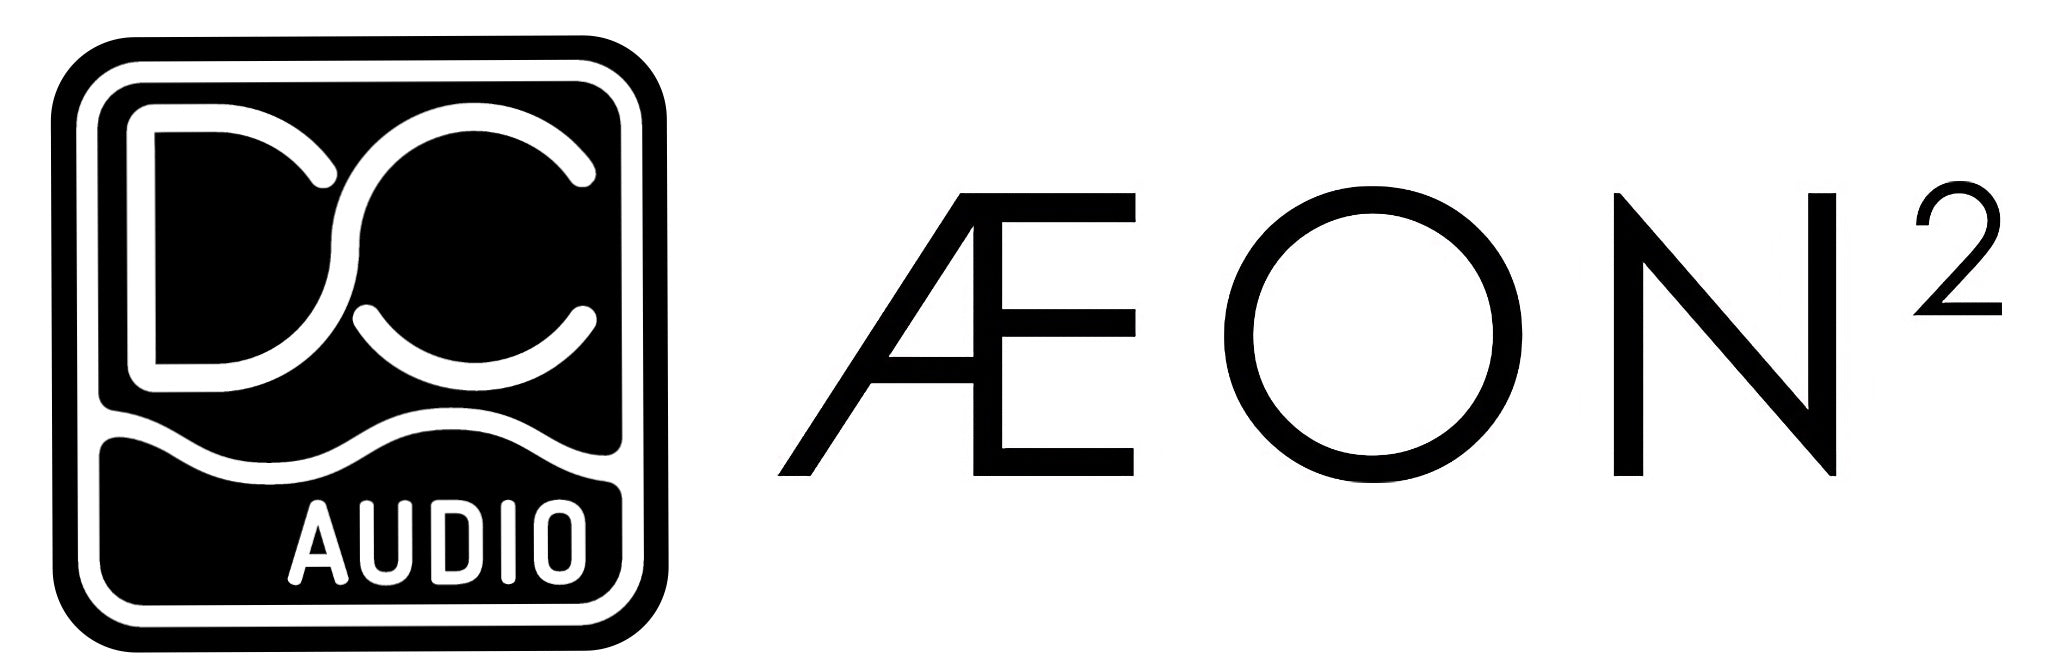 Dan Clark Audio Aeon 2 logo black